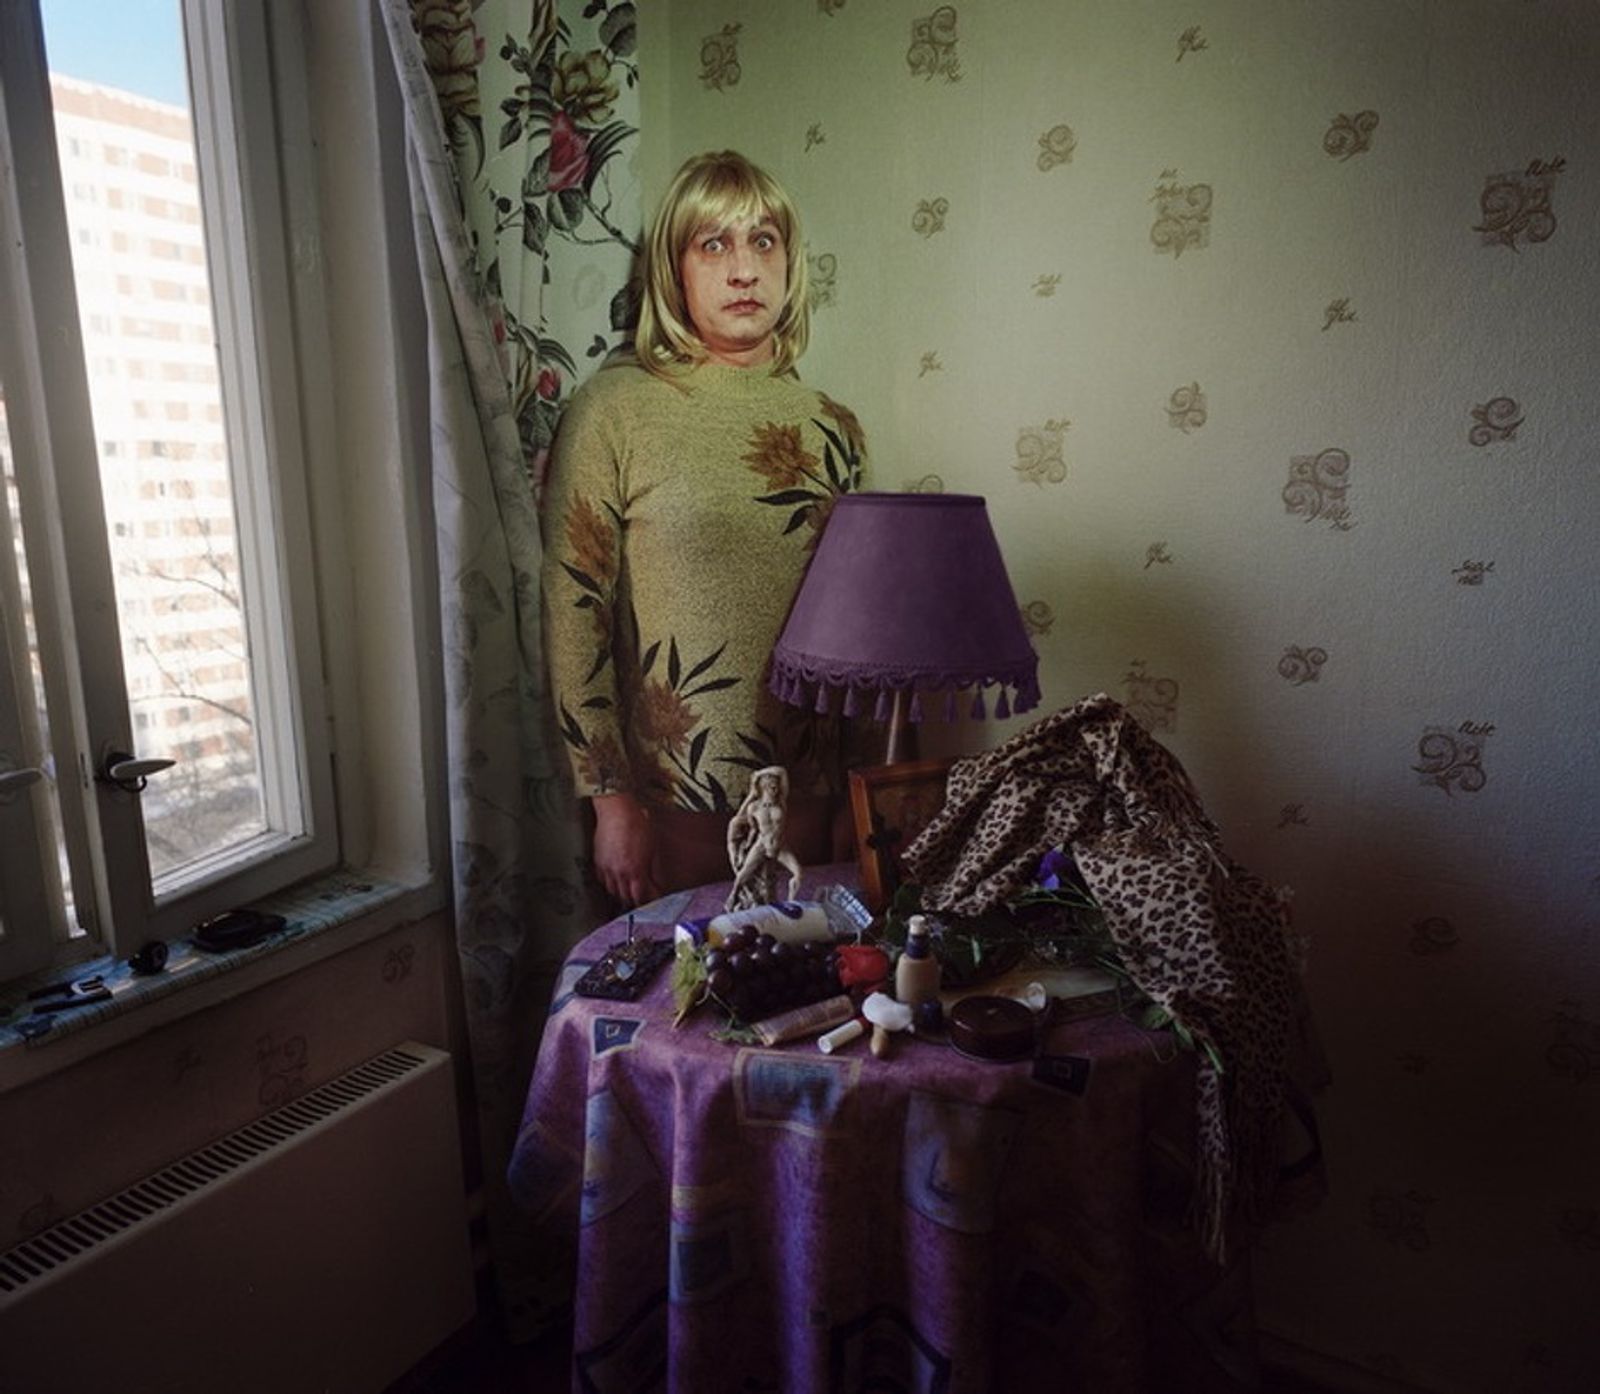 © Tatiana Ilina - Image from the Transvestites photography project